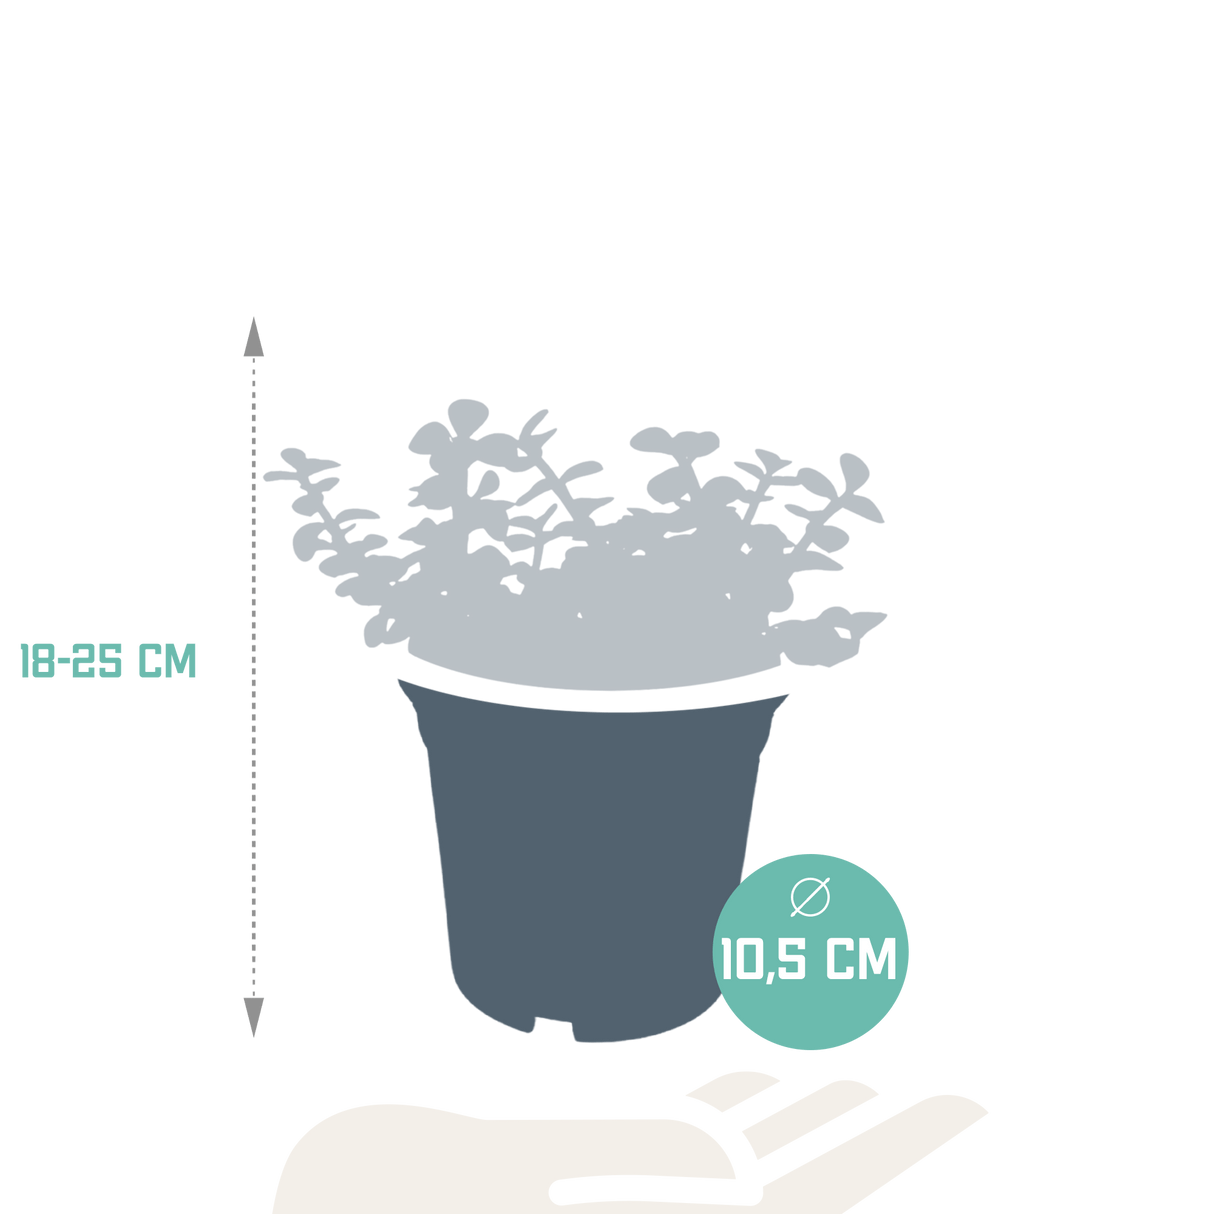 Livraison plante - Portulacaria Afra - h25cm, Ø10,5cm - plante d'intérieur